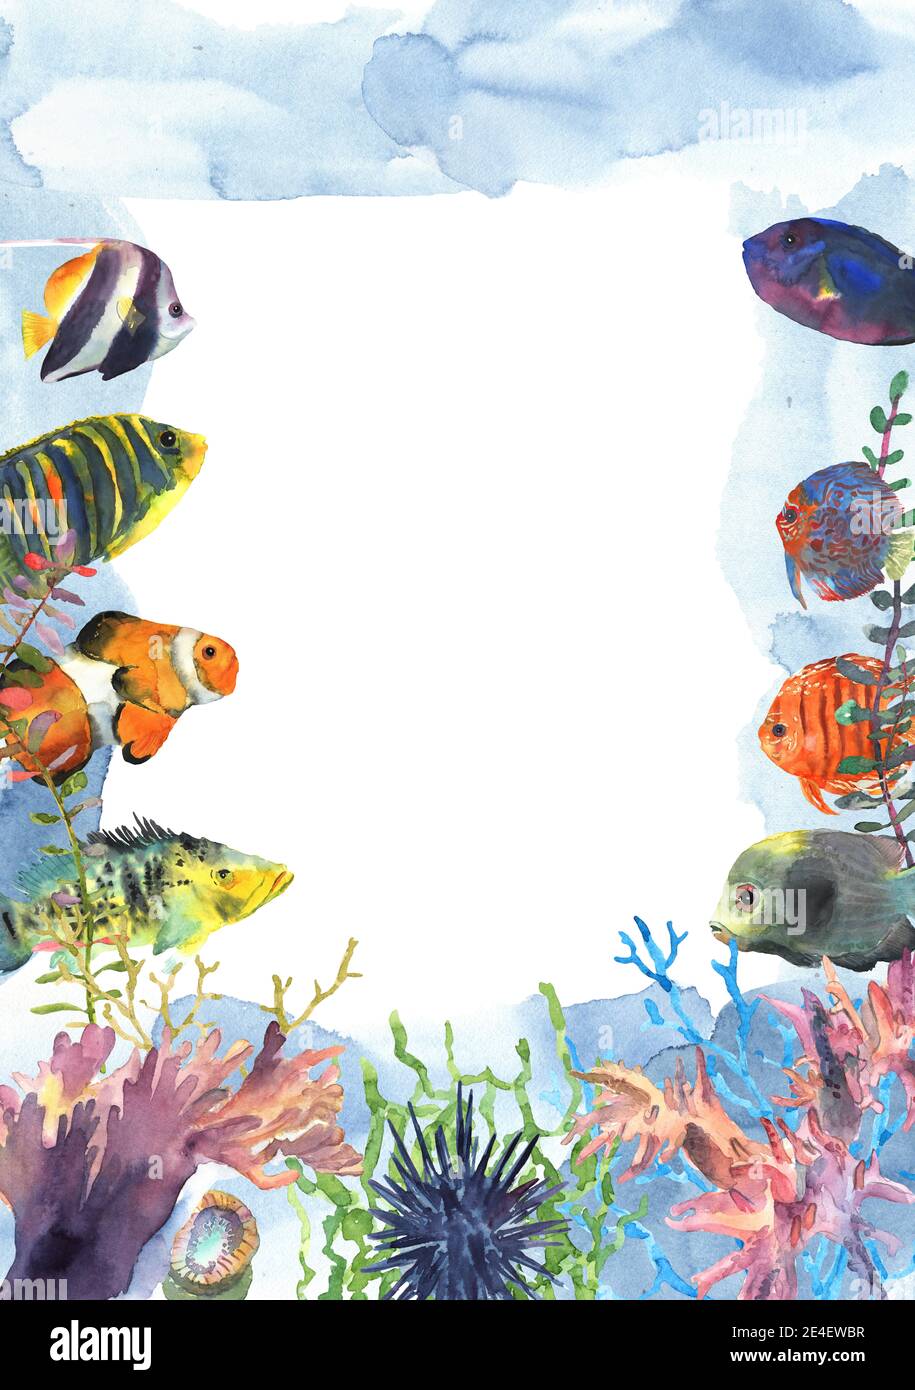 Cadre de poissons tropicaux exotiques colorés dessiné à la main dans l'aquarelle pour la décoration. Monde sous-marin avec floral. Icône de site Web. Banque D'Images